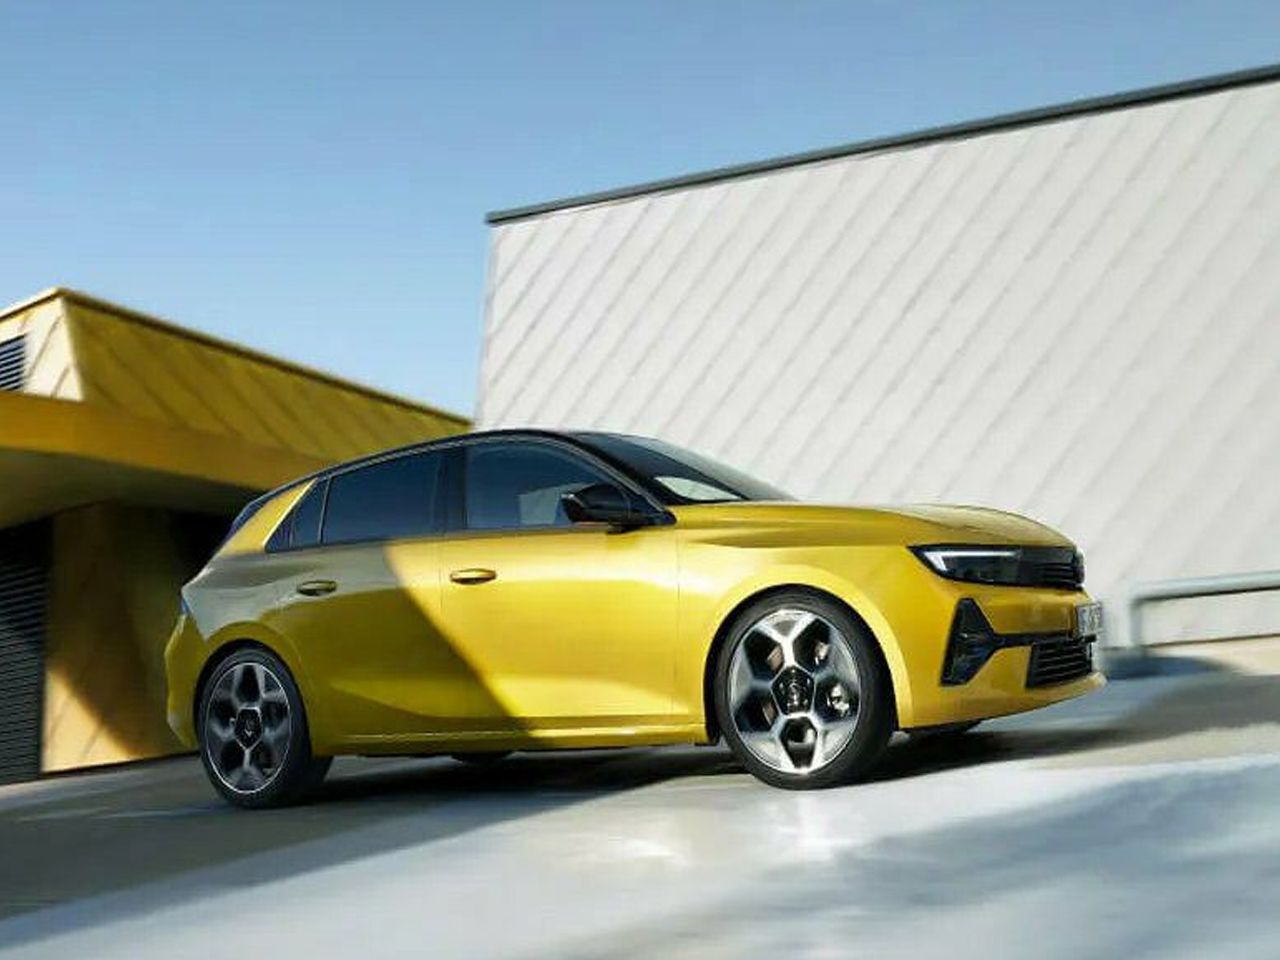 News und aktuelle Modelle finden Sie auf unserer Opel-Seite